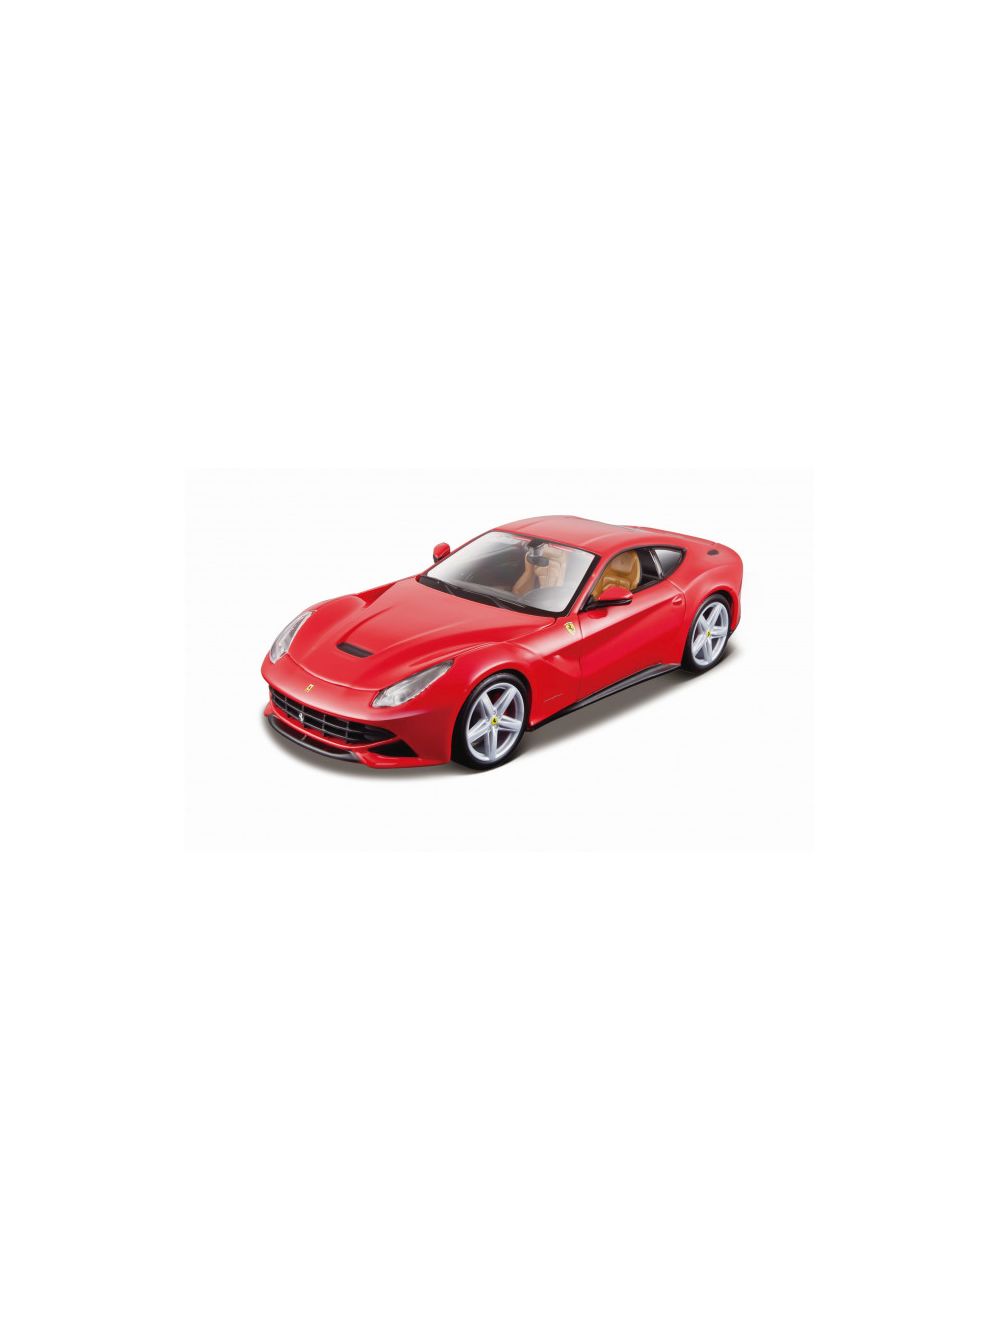 Maisto model car Die Cast 1:24 AL Ferrari (Coll. A) 39018